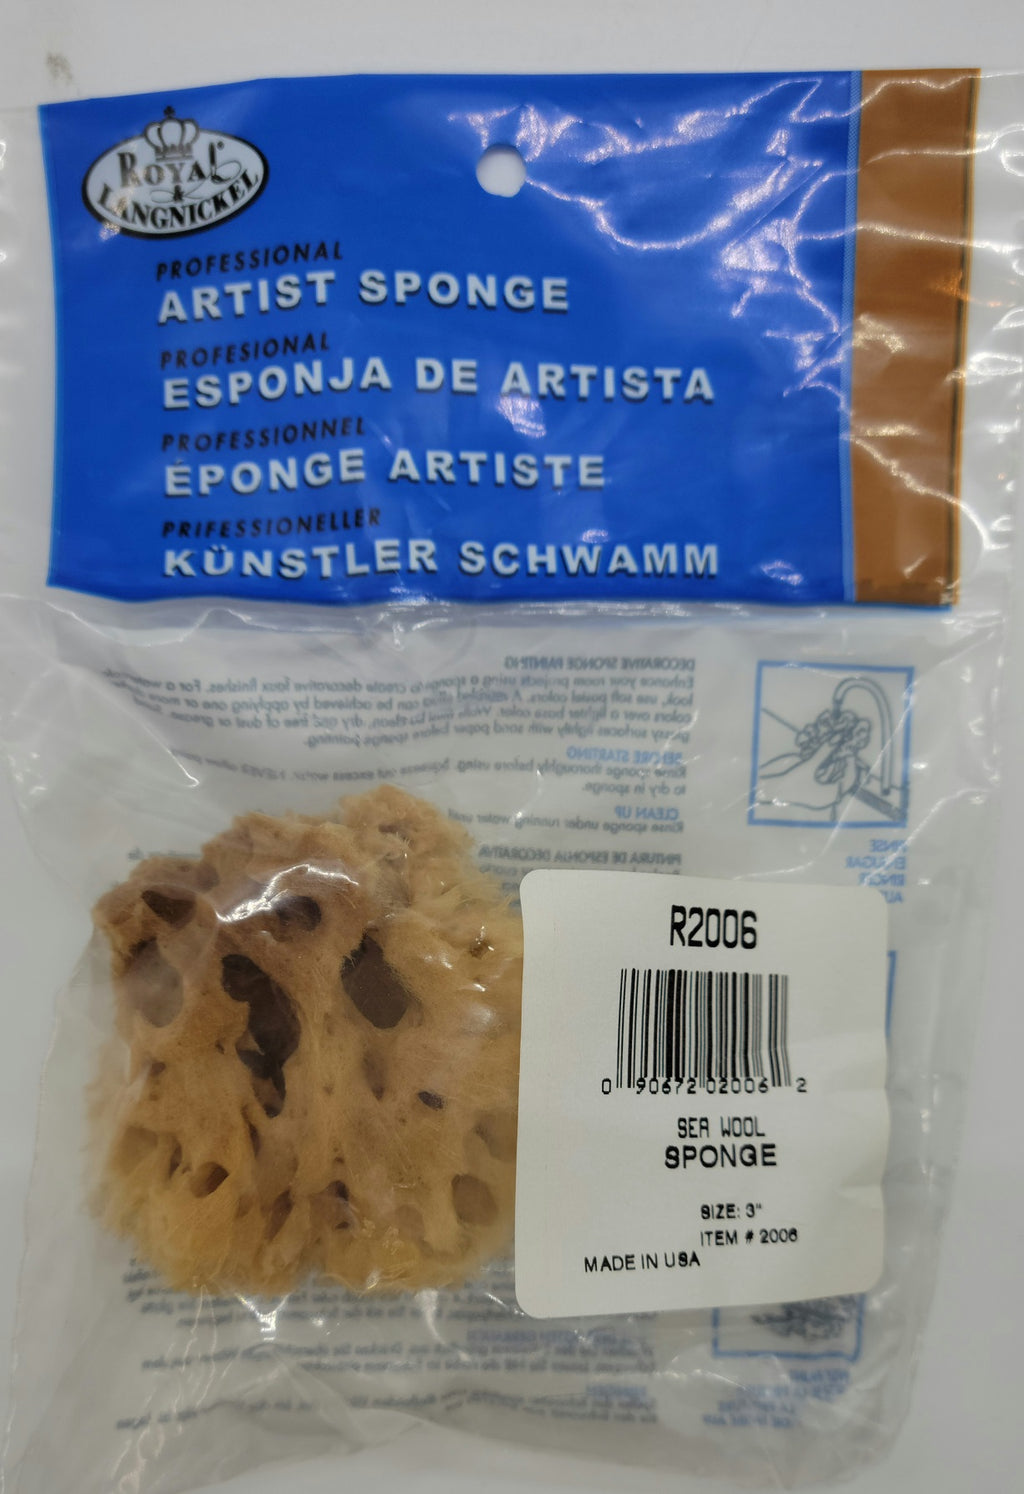 Sea Wool Sponges by Royal & Langnickel